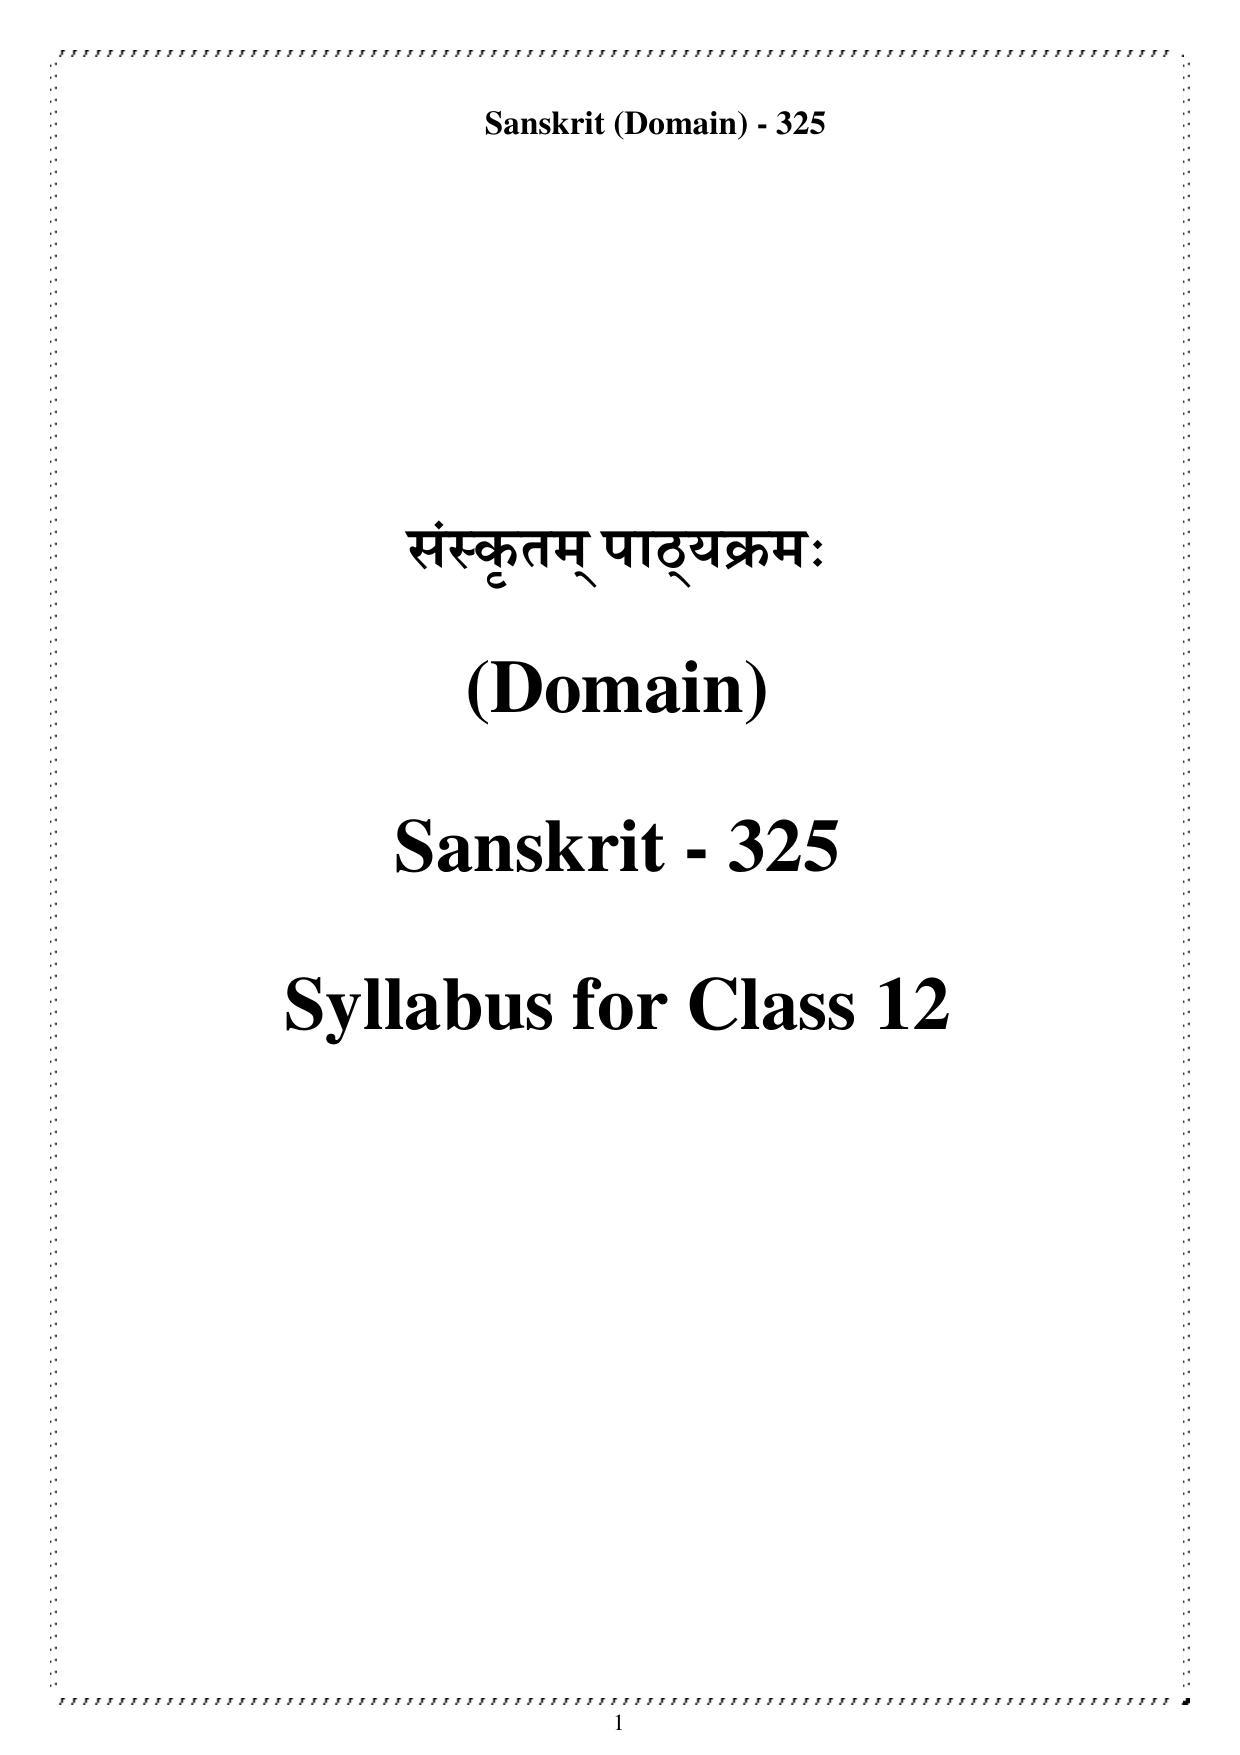 CUET Syllabus for Sanskrit (English) - Page 1